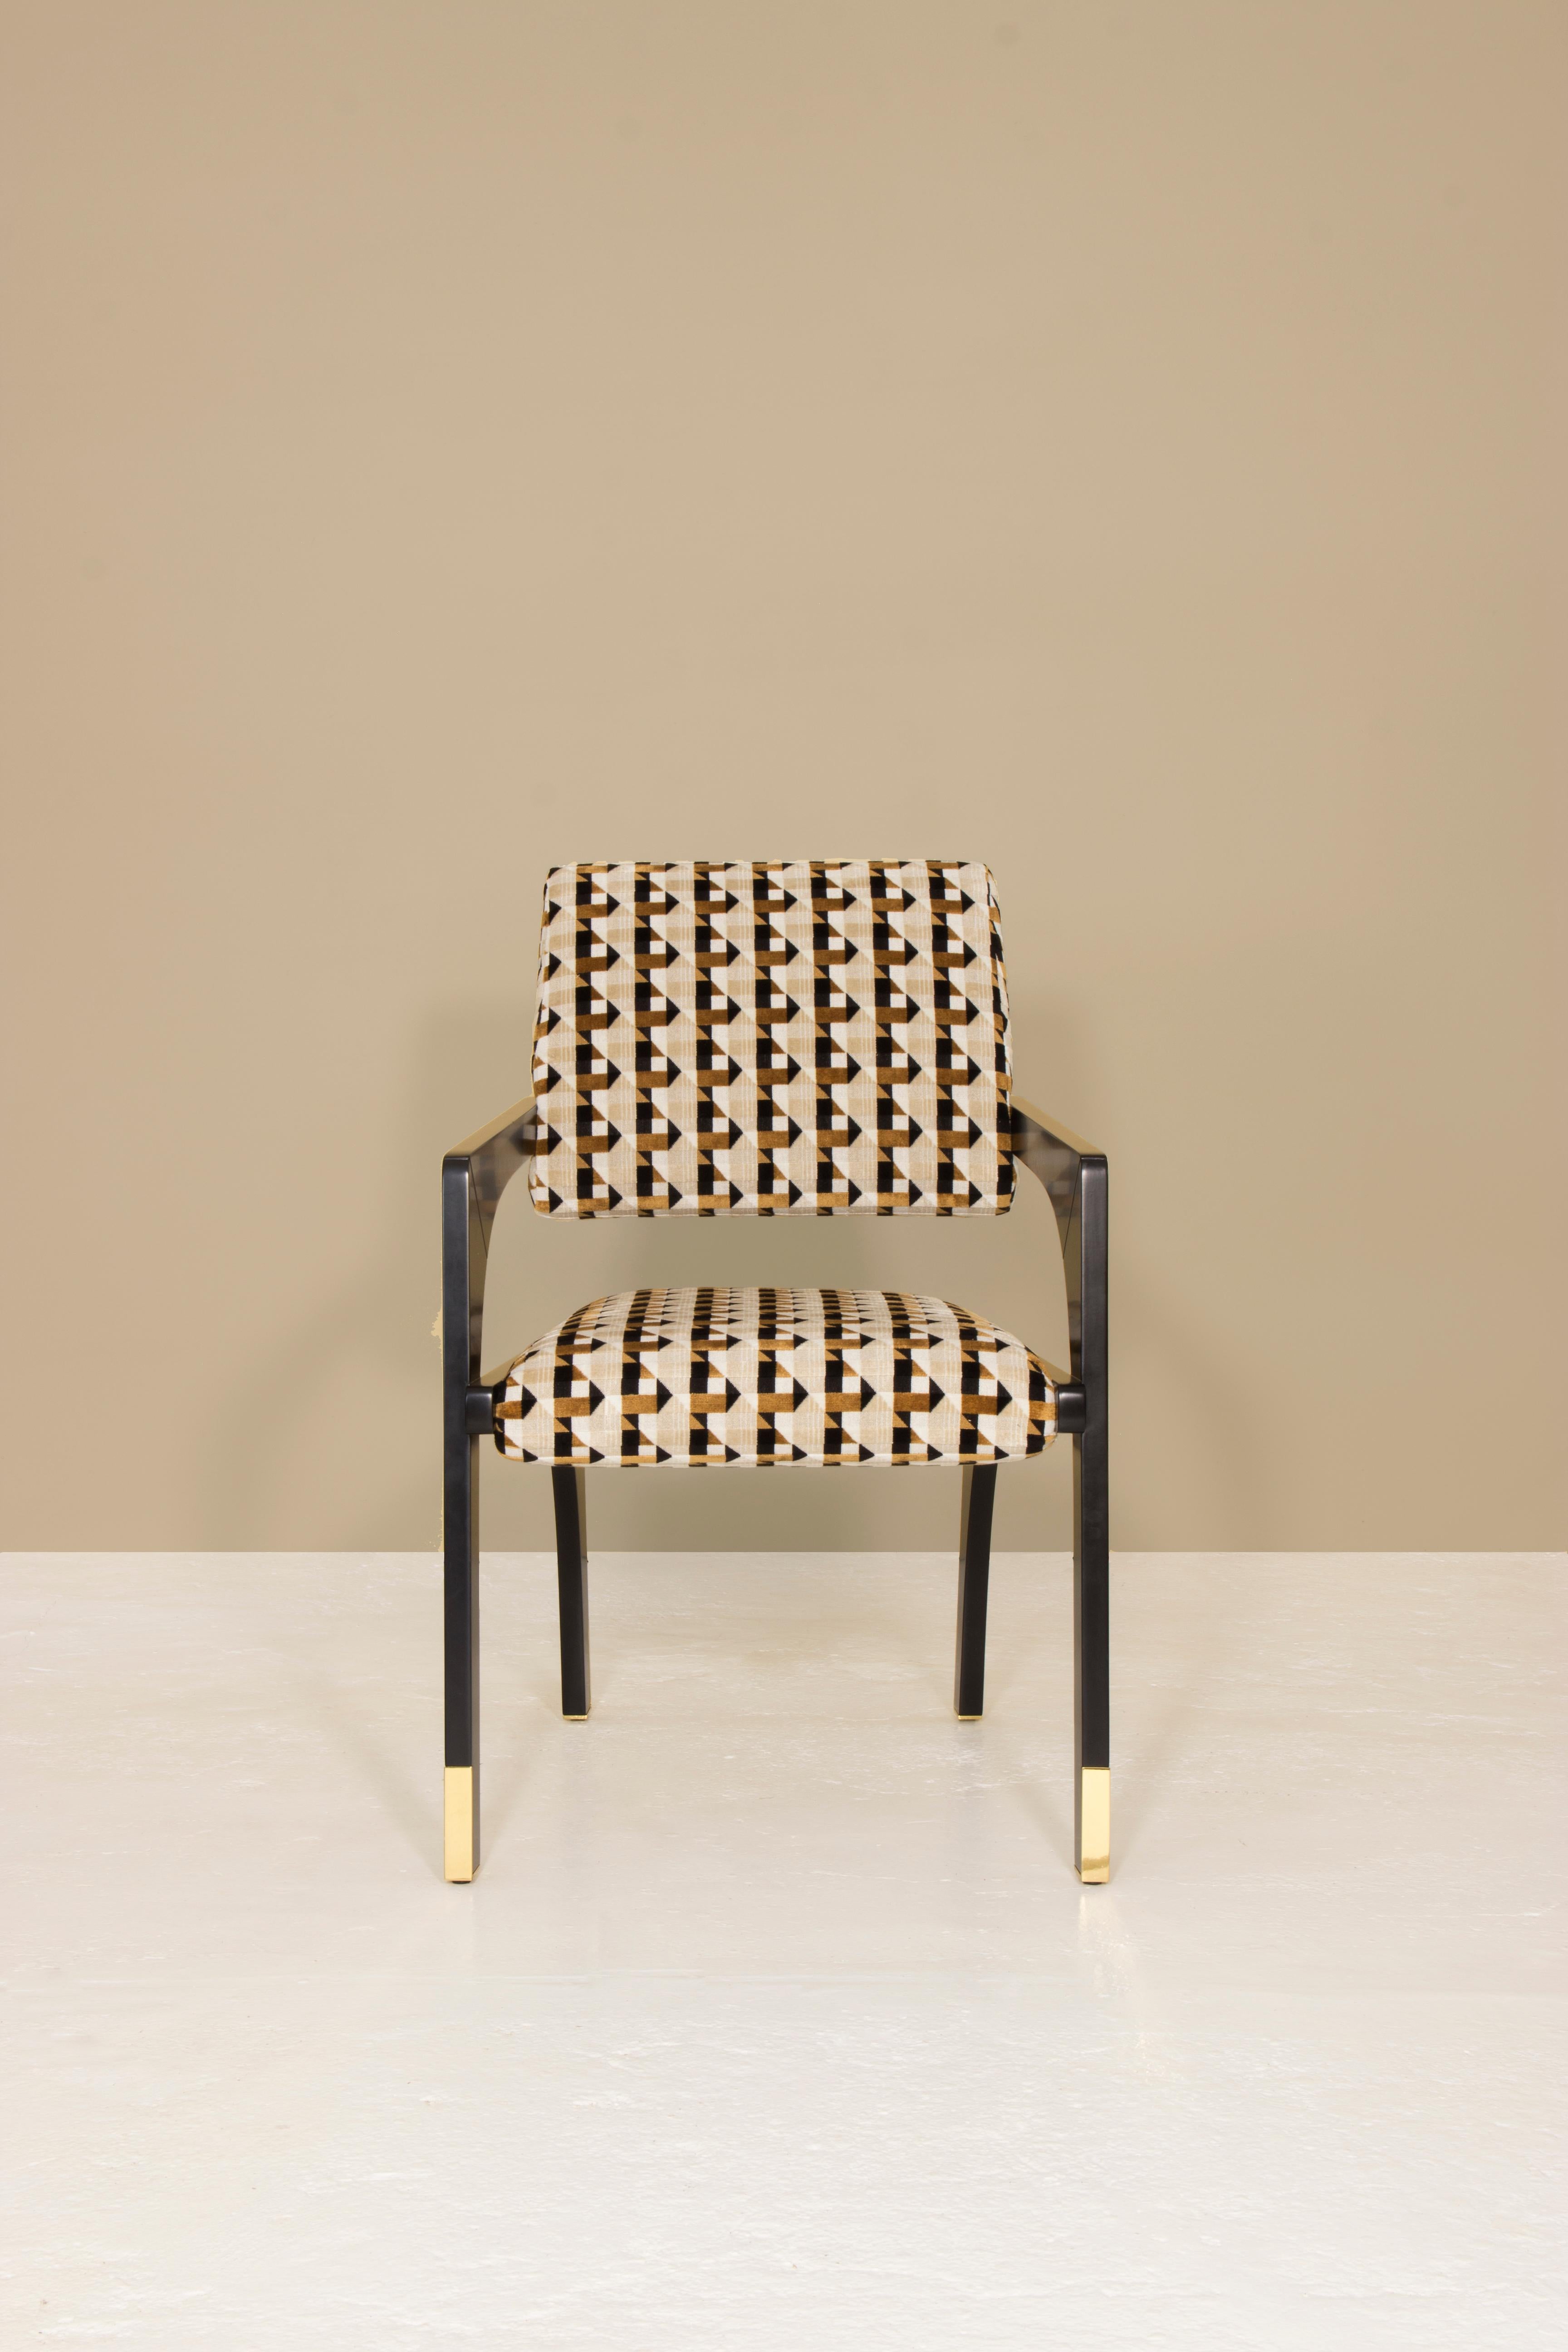 Meilleure conception de chaise aux International Design & Architecture Awards 2021
Mention honorable aux European Product Design Awards 2021

La chaise de salle à manger Arches est conçue à l'image de l'échelle architecturale qui suggère une